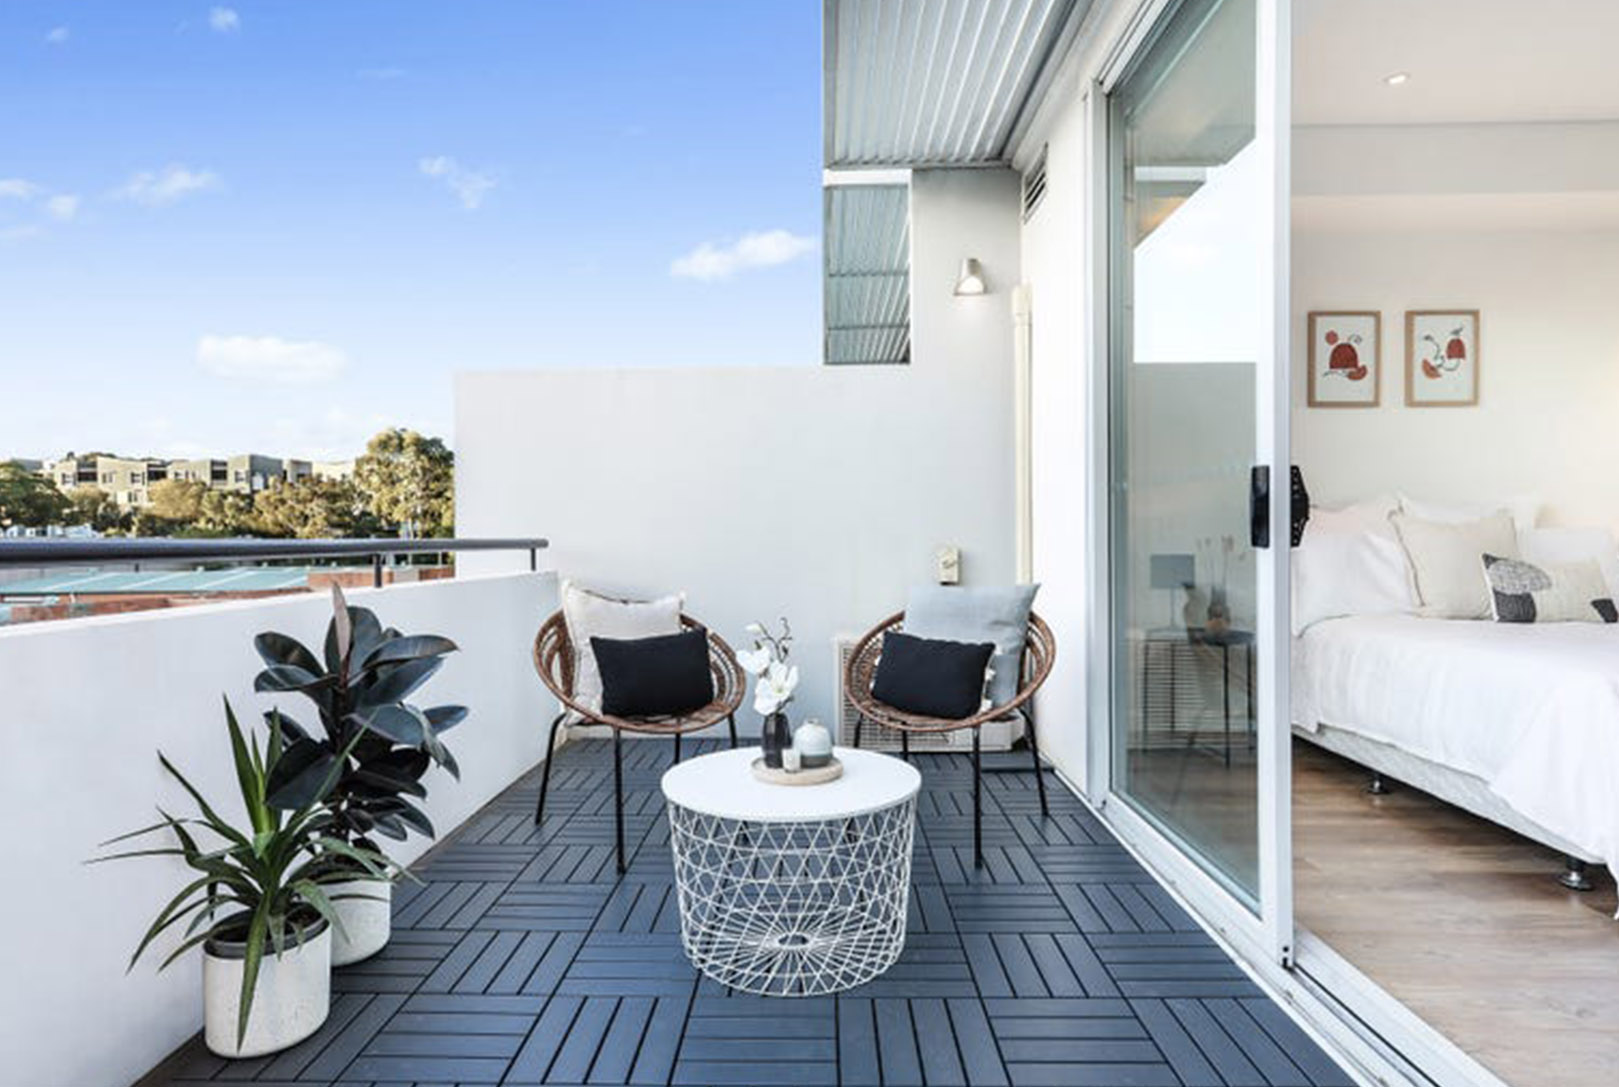 Home Buyer in Allen St, Waterloo, Sydney - Terrace View